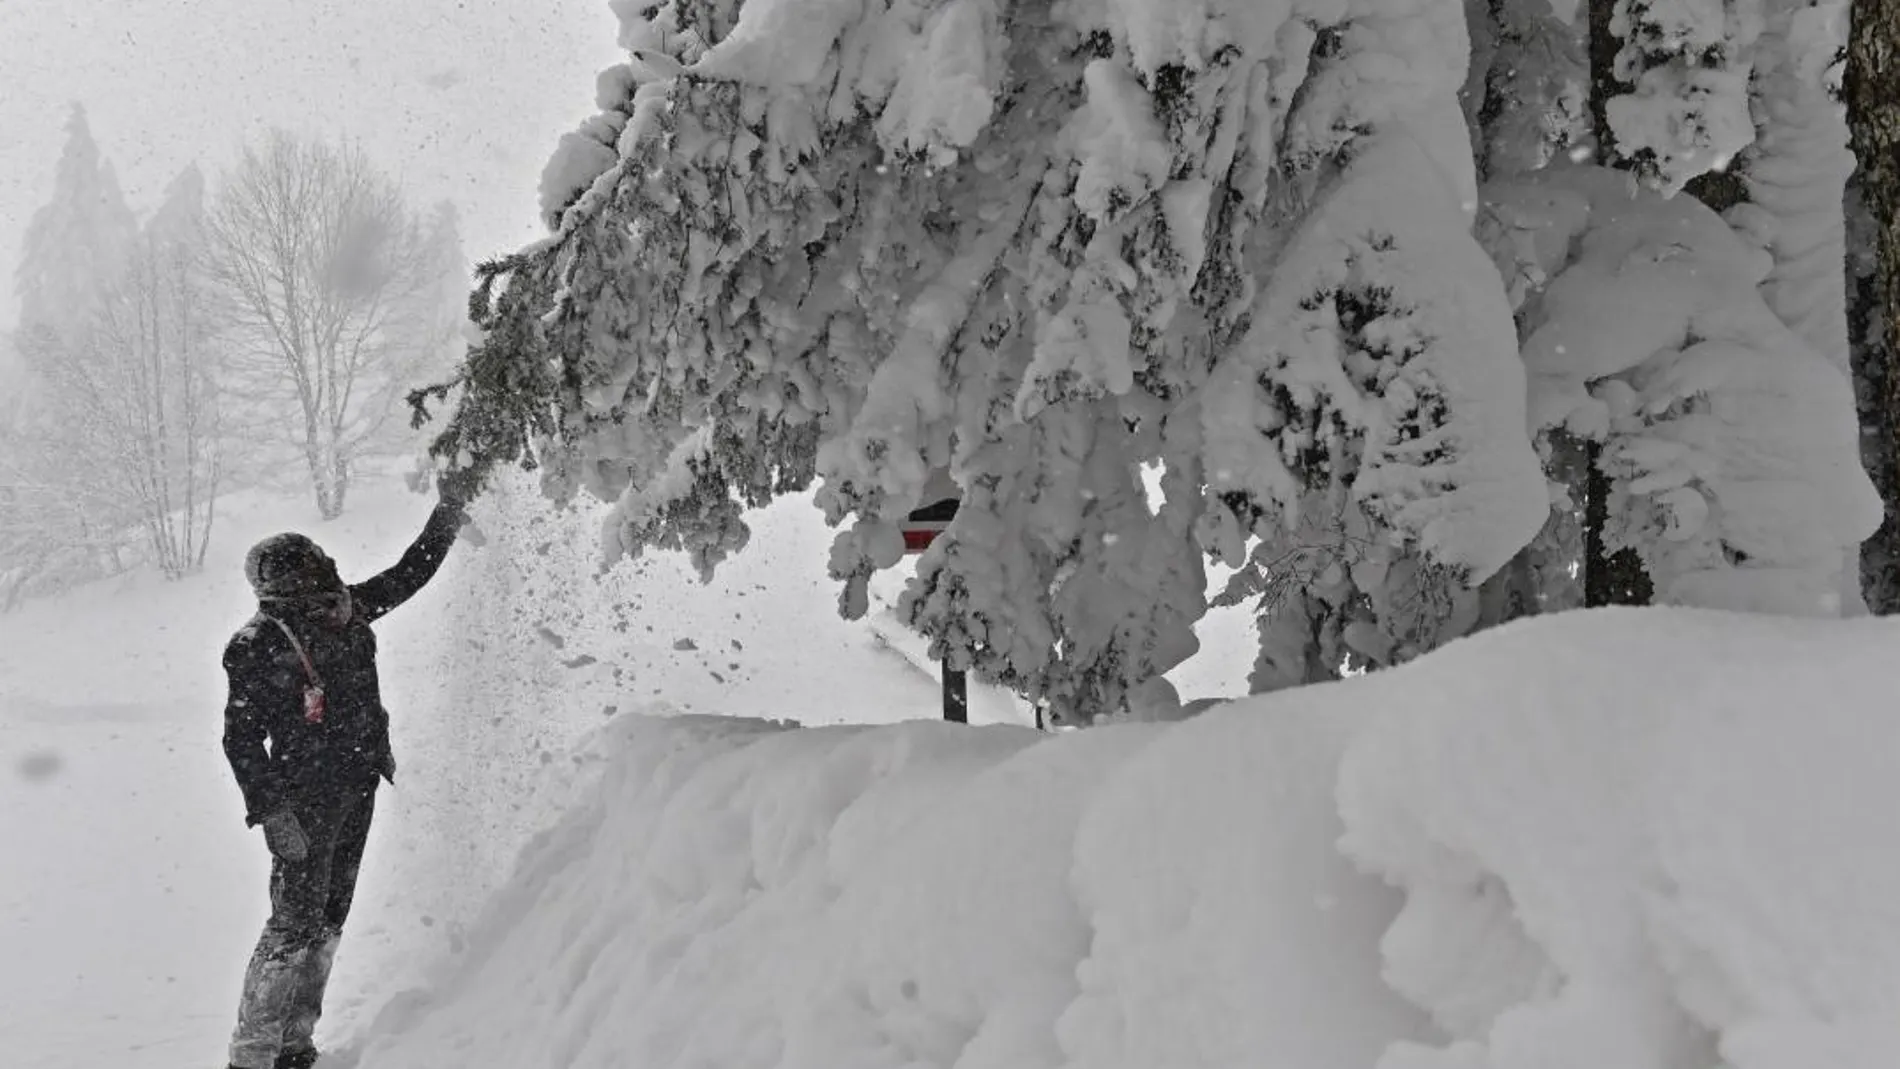 Un hombre sacude un árbol cubierto de nieve acumulada tras una tormenta caída en Casaglia, Mugello, Florencia (Italia) hoy, 27 de febrero de 2018. EFE/ Maurizio Degl'innocenti